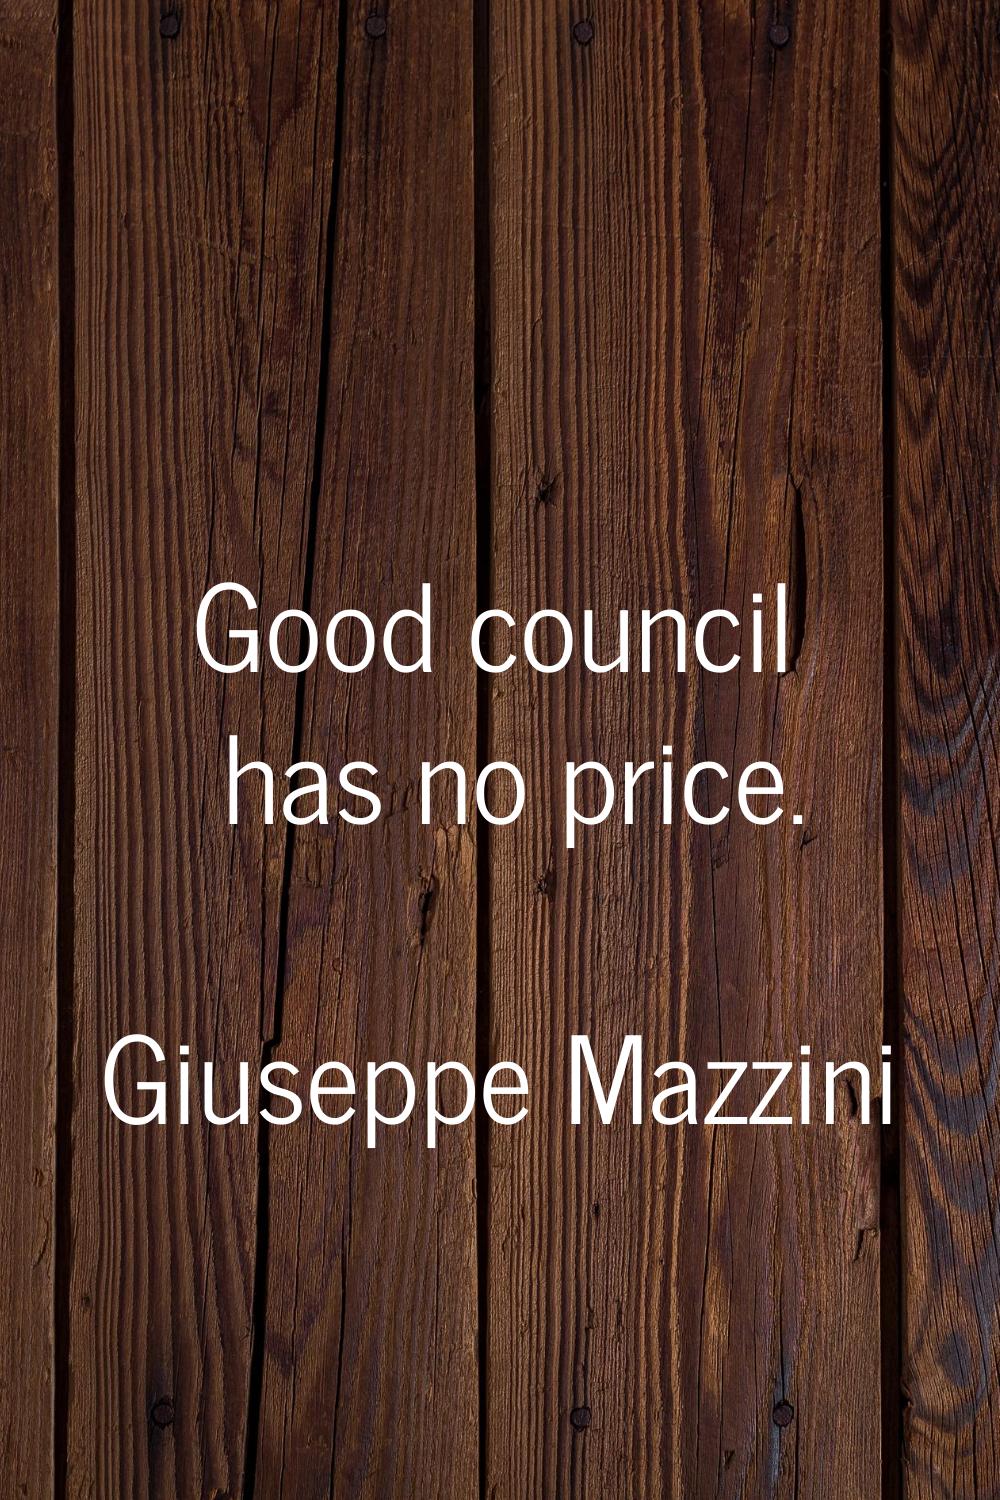 Good council has no price.